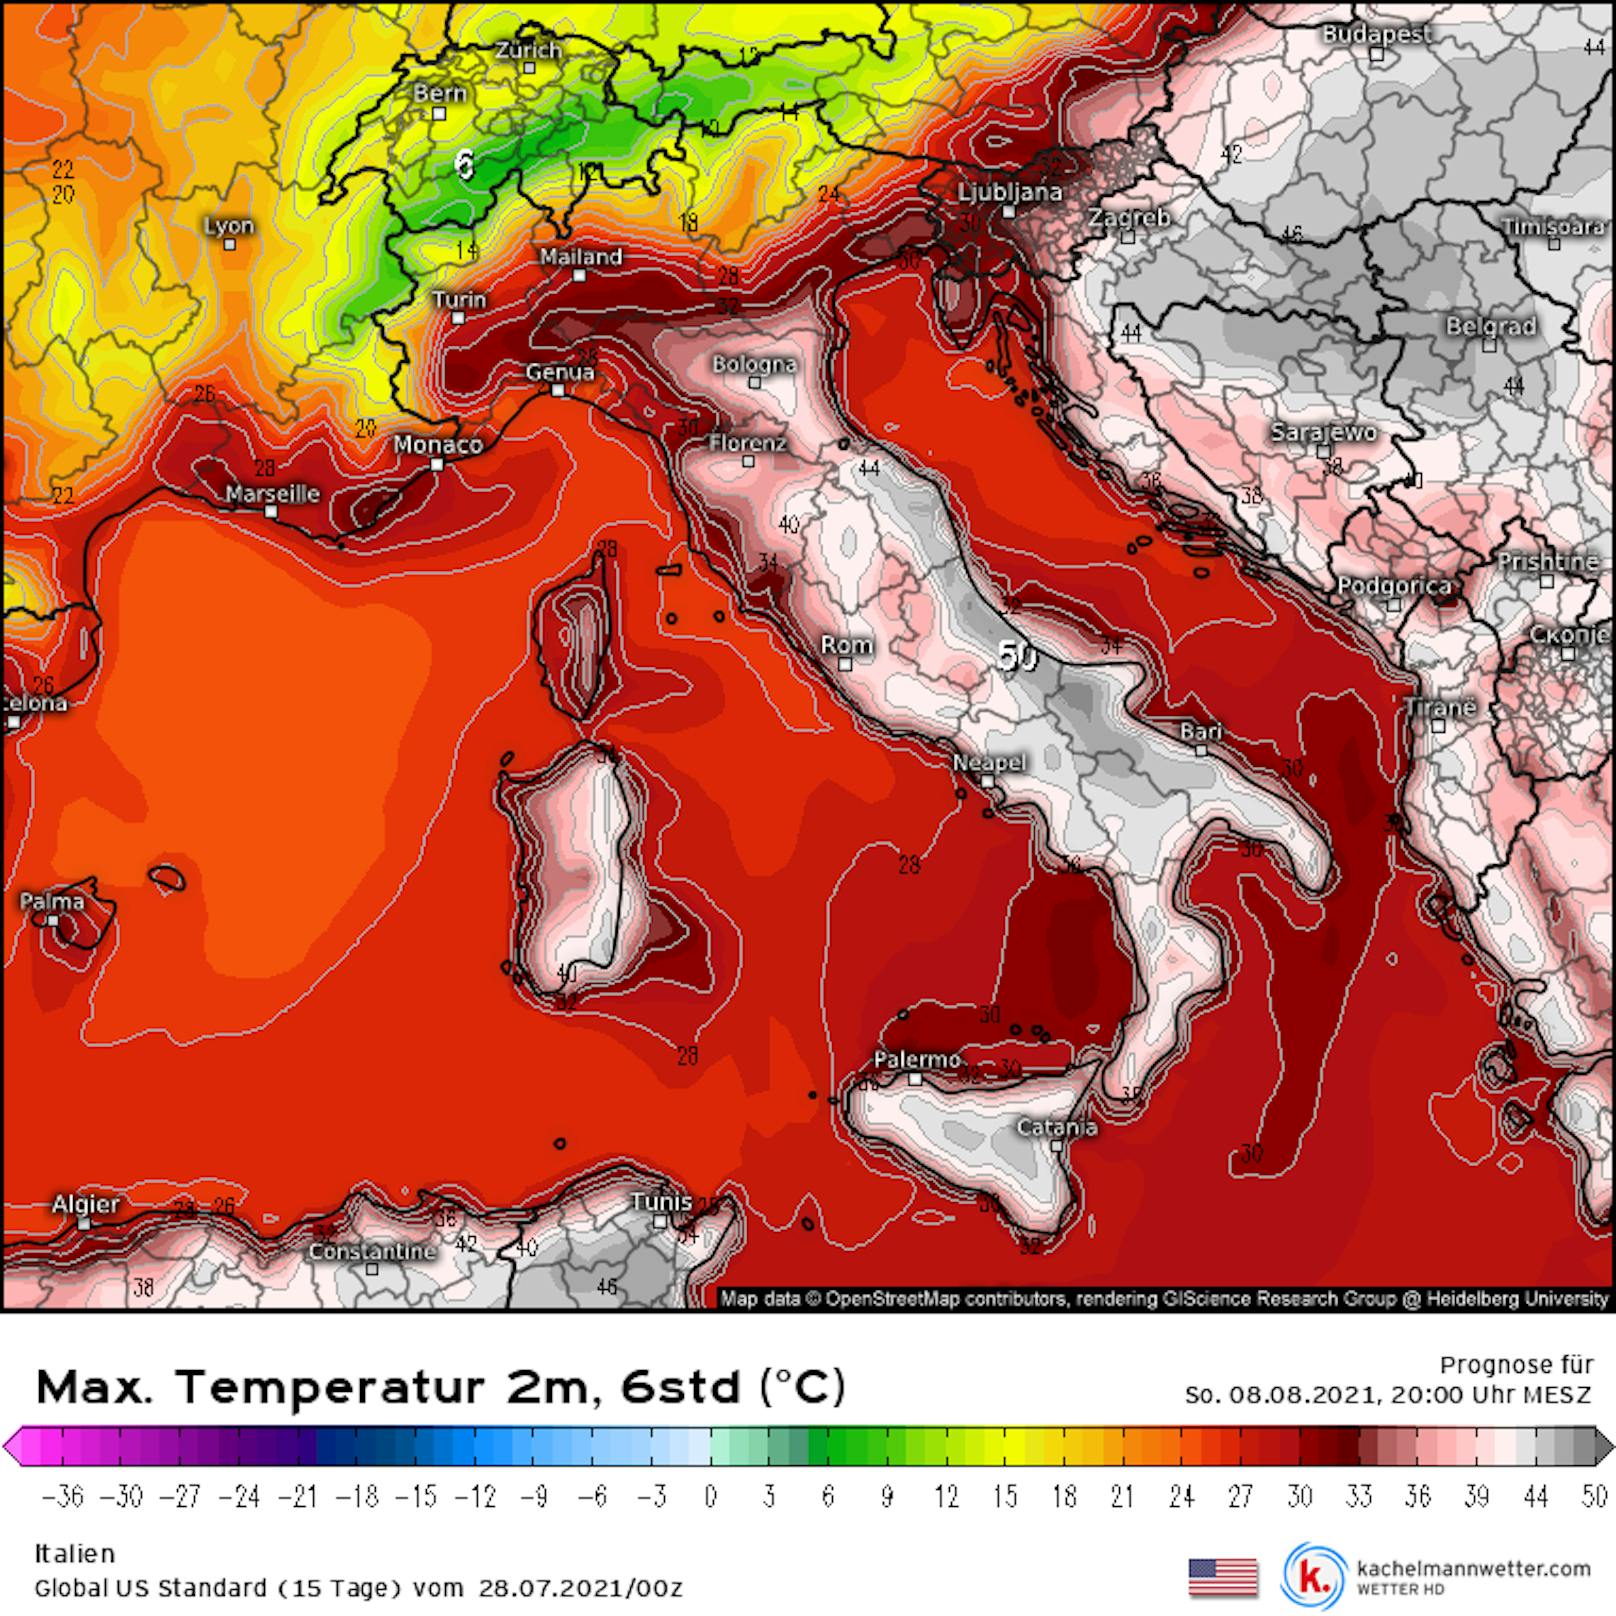 Die Prognose ist düster: das US-Wettermodell sagt für 8. August 2021 eine extreme Hitze in Italien und am Balkan voraus.